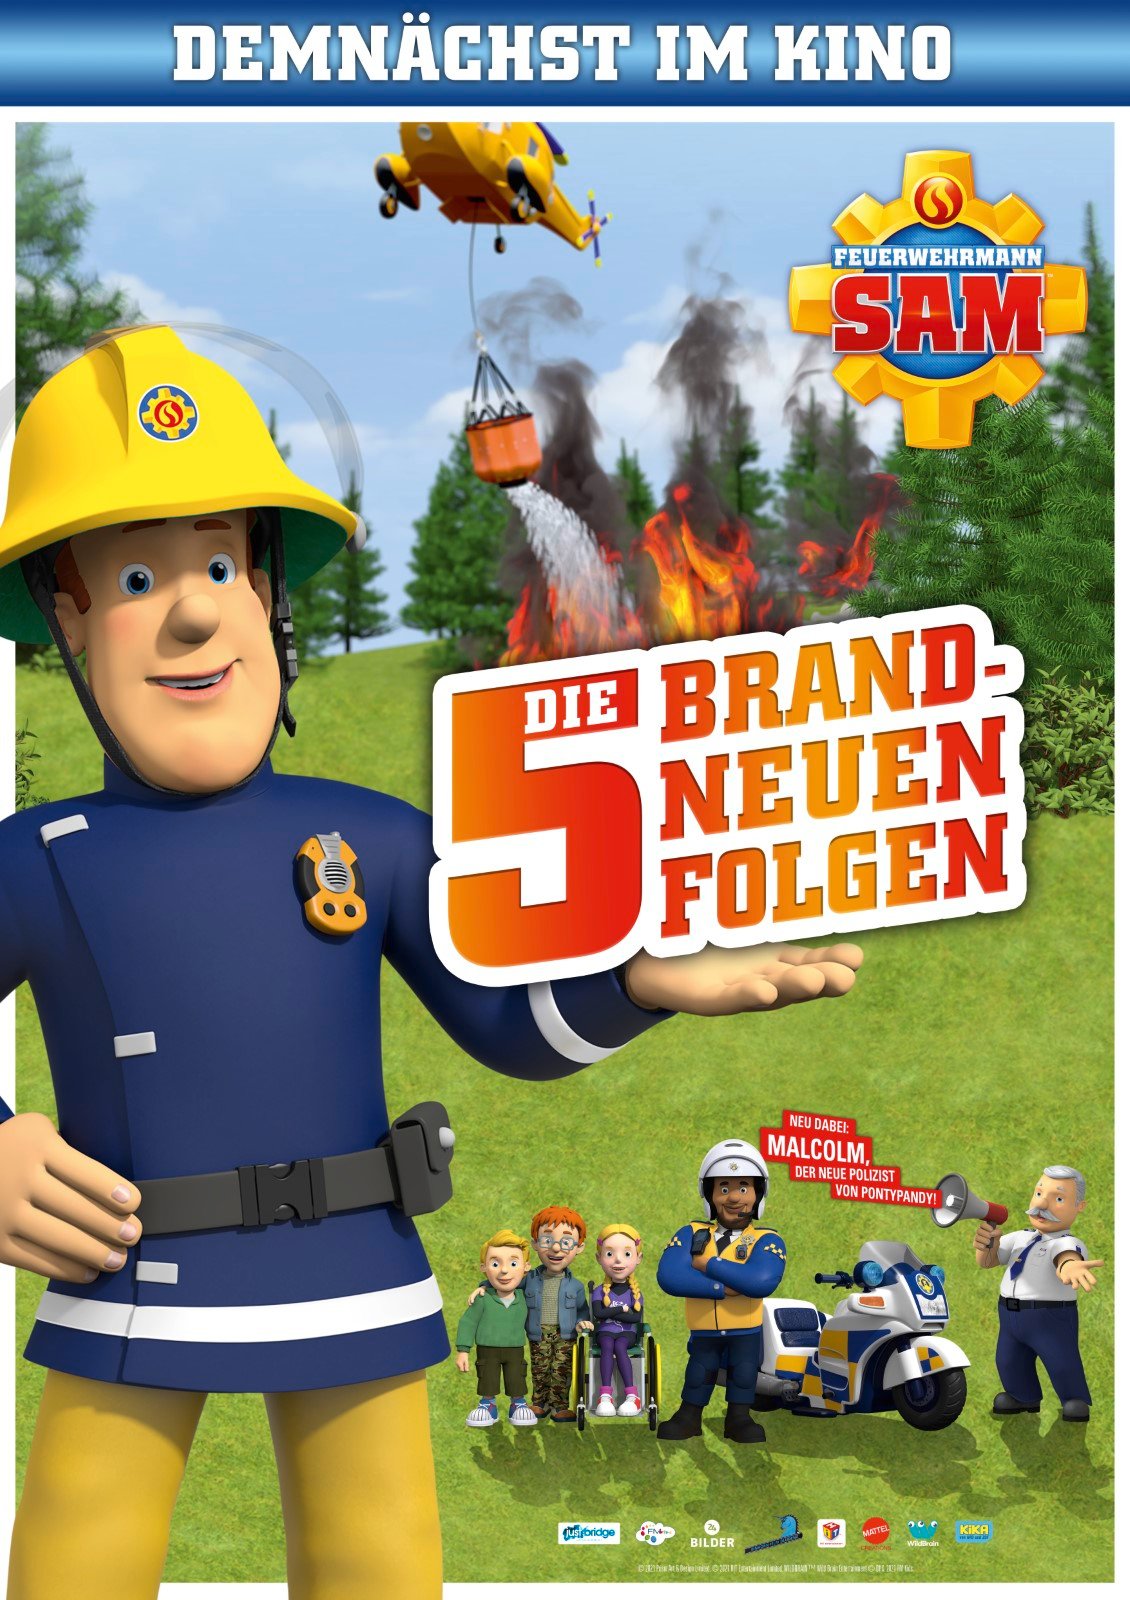 Feuerwehrmann Sam - Das Kinospecial: Filme - FILMSTARTS.de